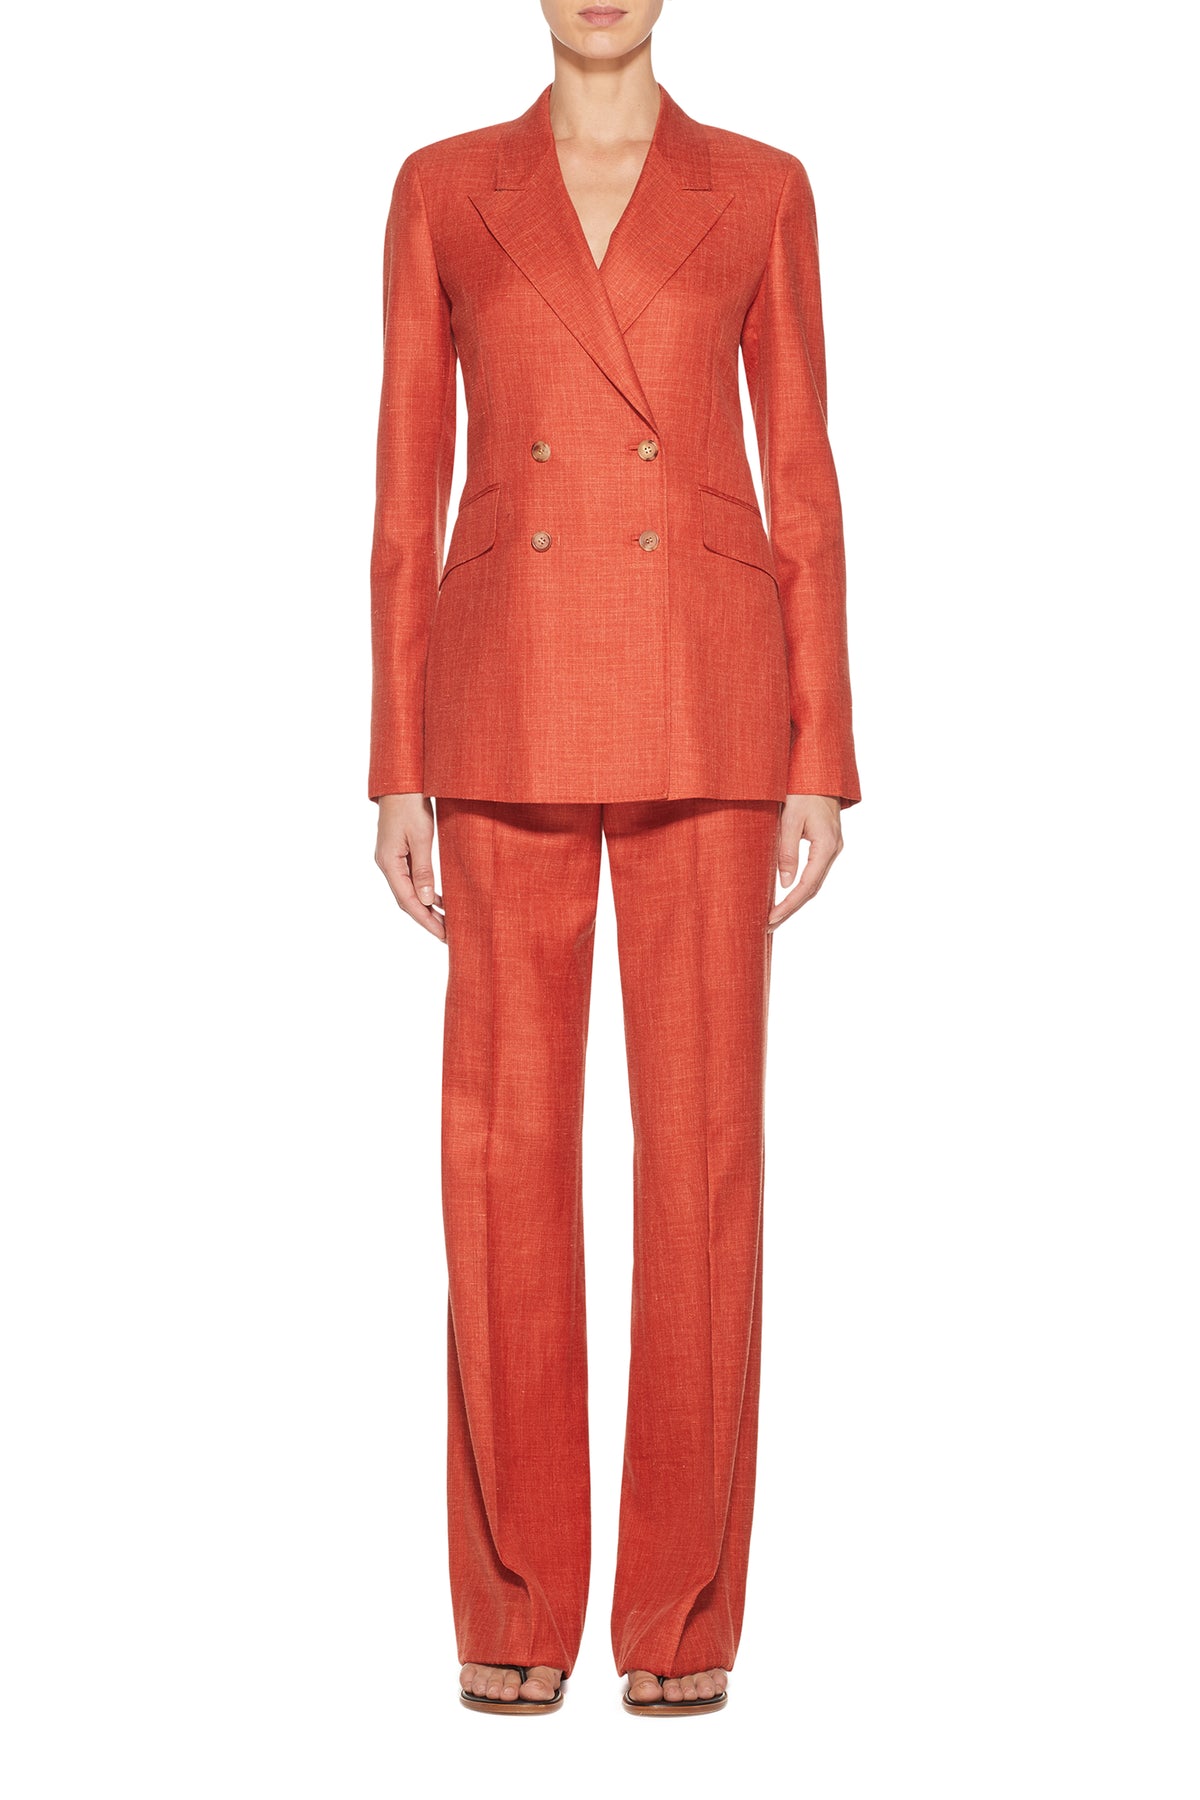 Angela Blazer in Orange Silk Wool and Linen